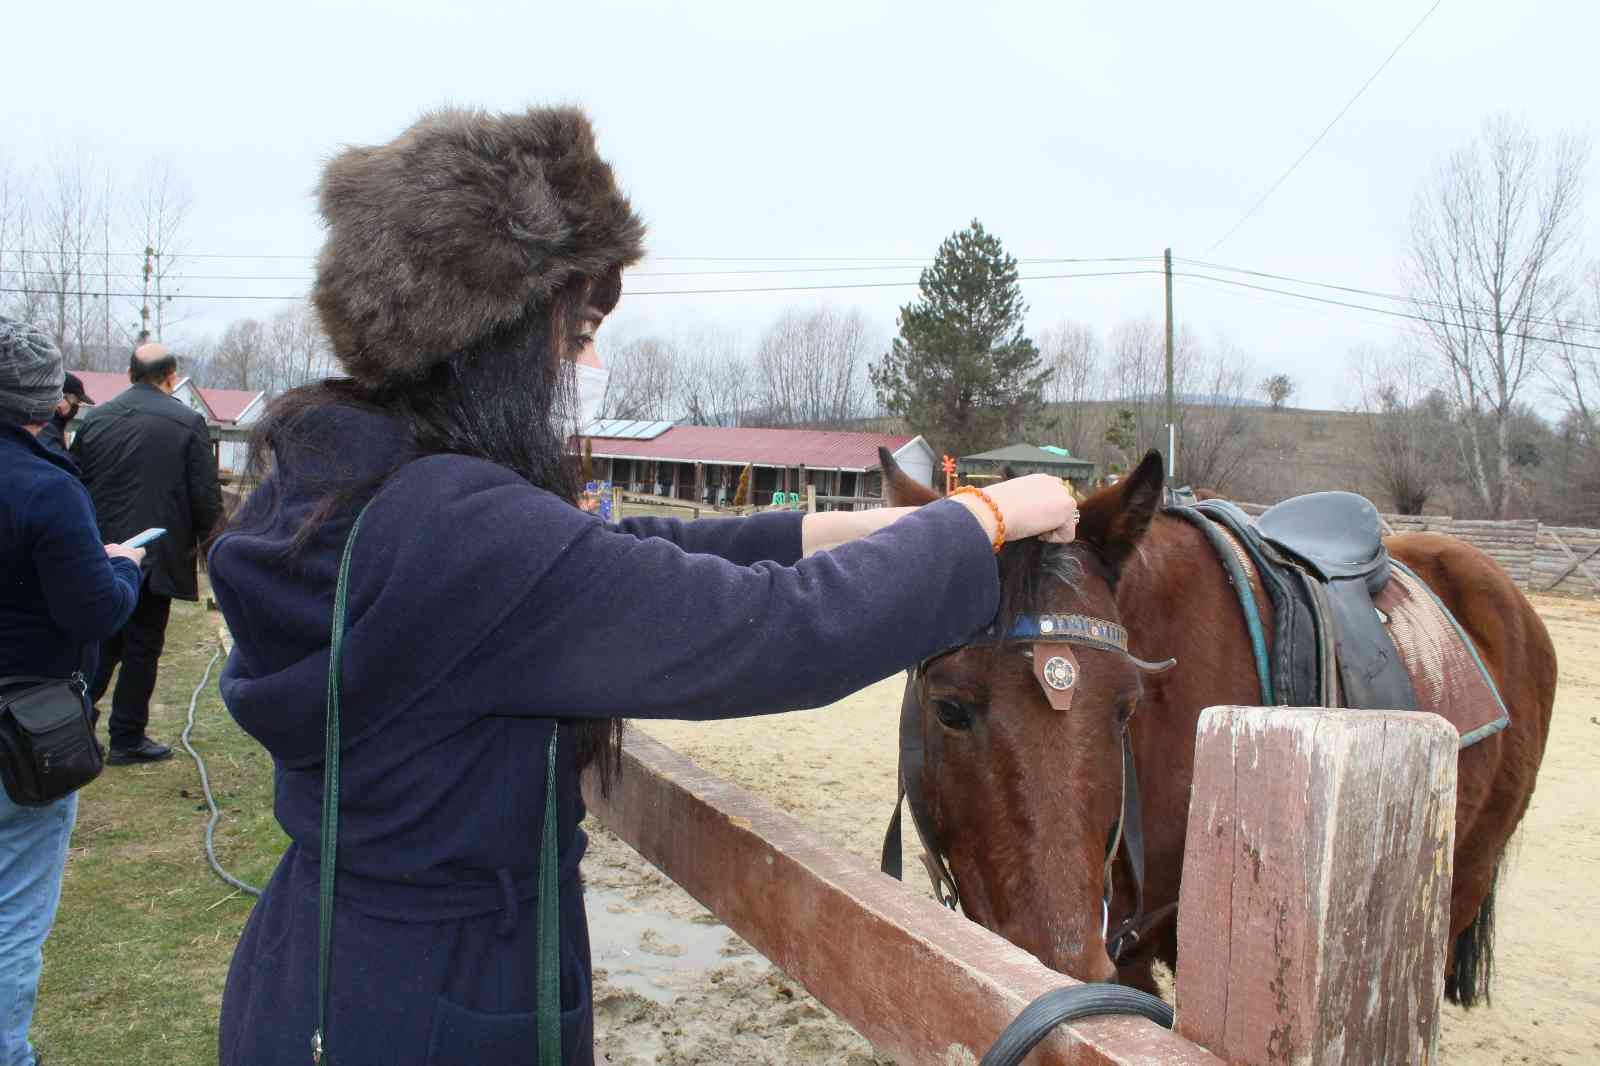 Seyahat acenteleri Kastamonu’daki at çiftliklerine hayran kaldı #kastamonu